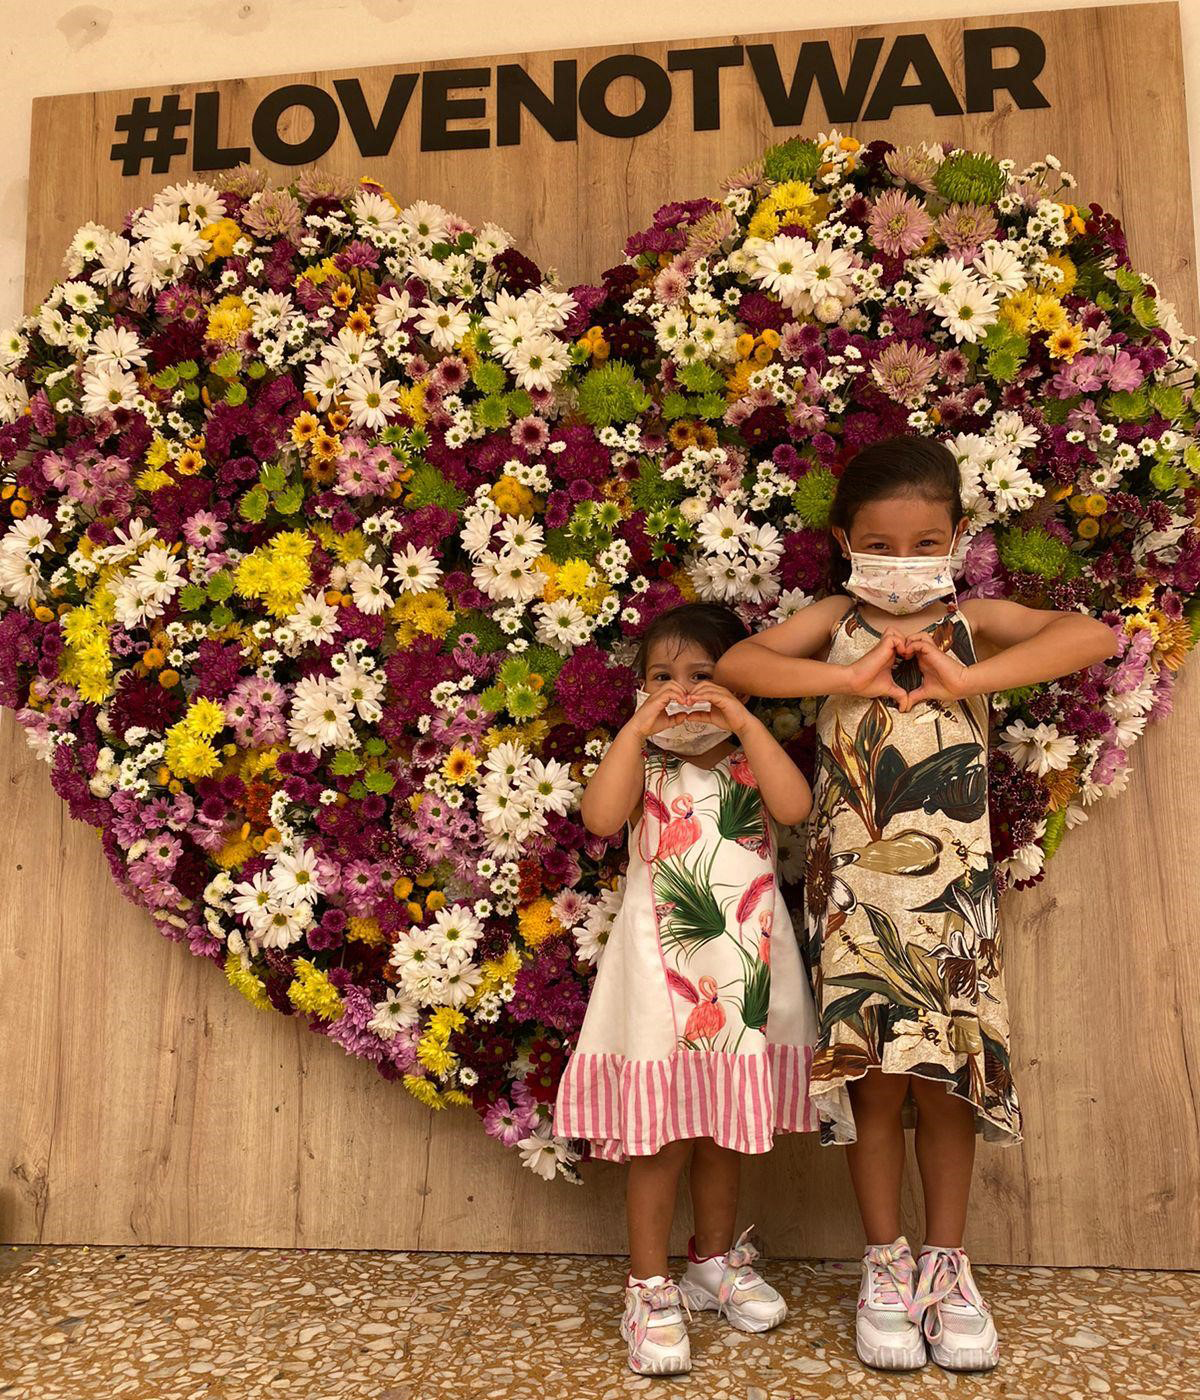 #LoveNotWar: flower hearts project around the world